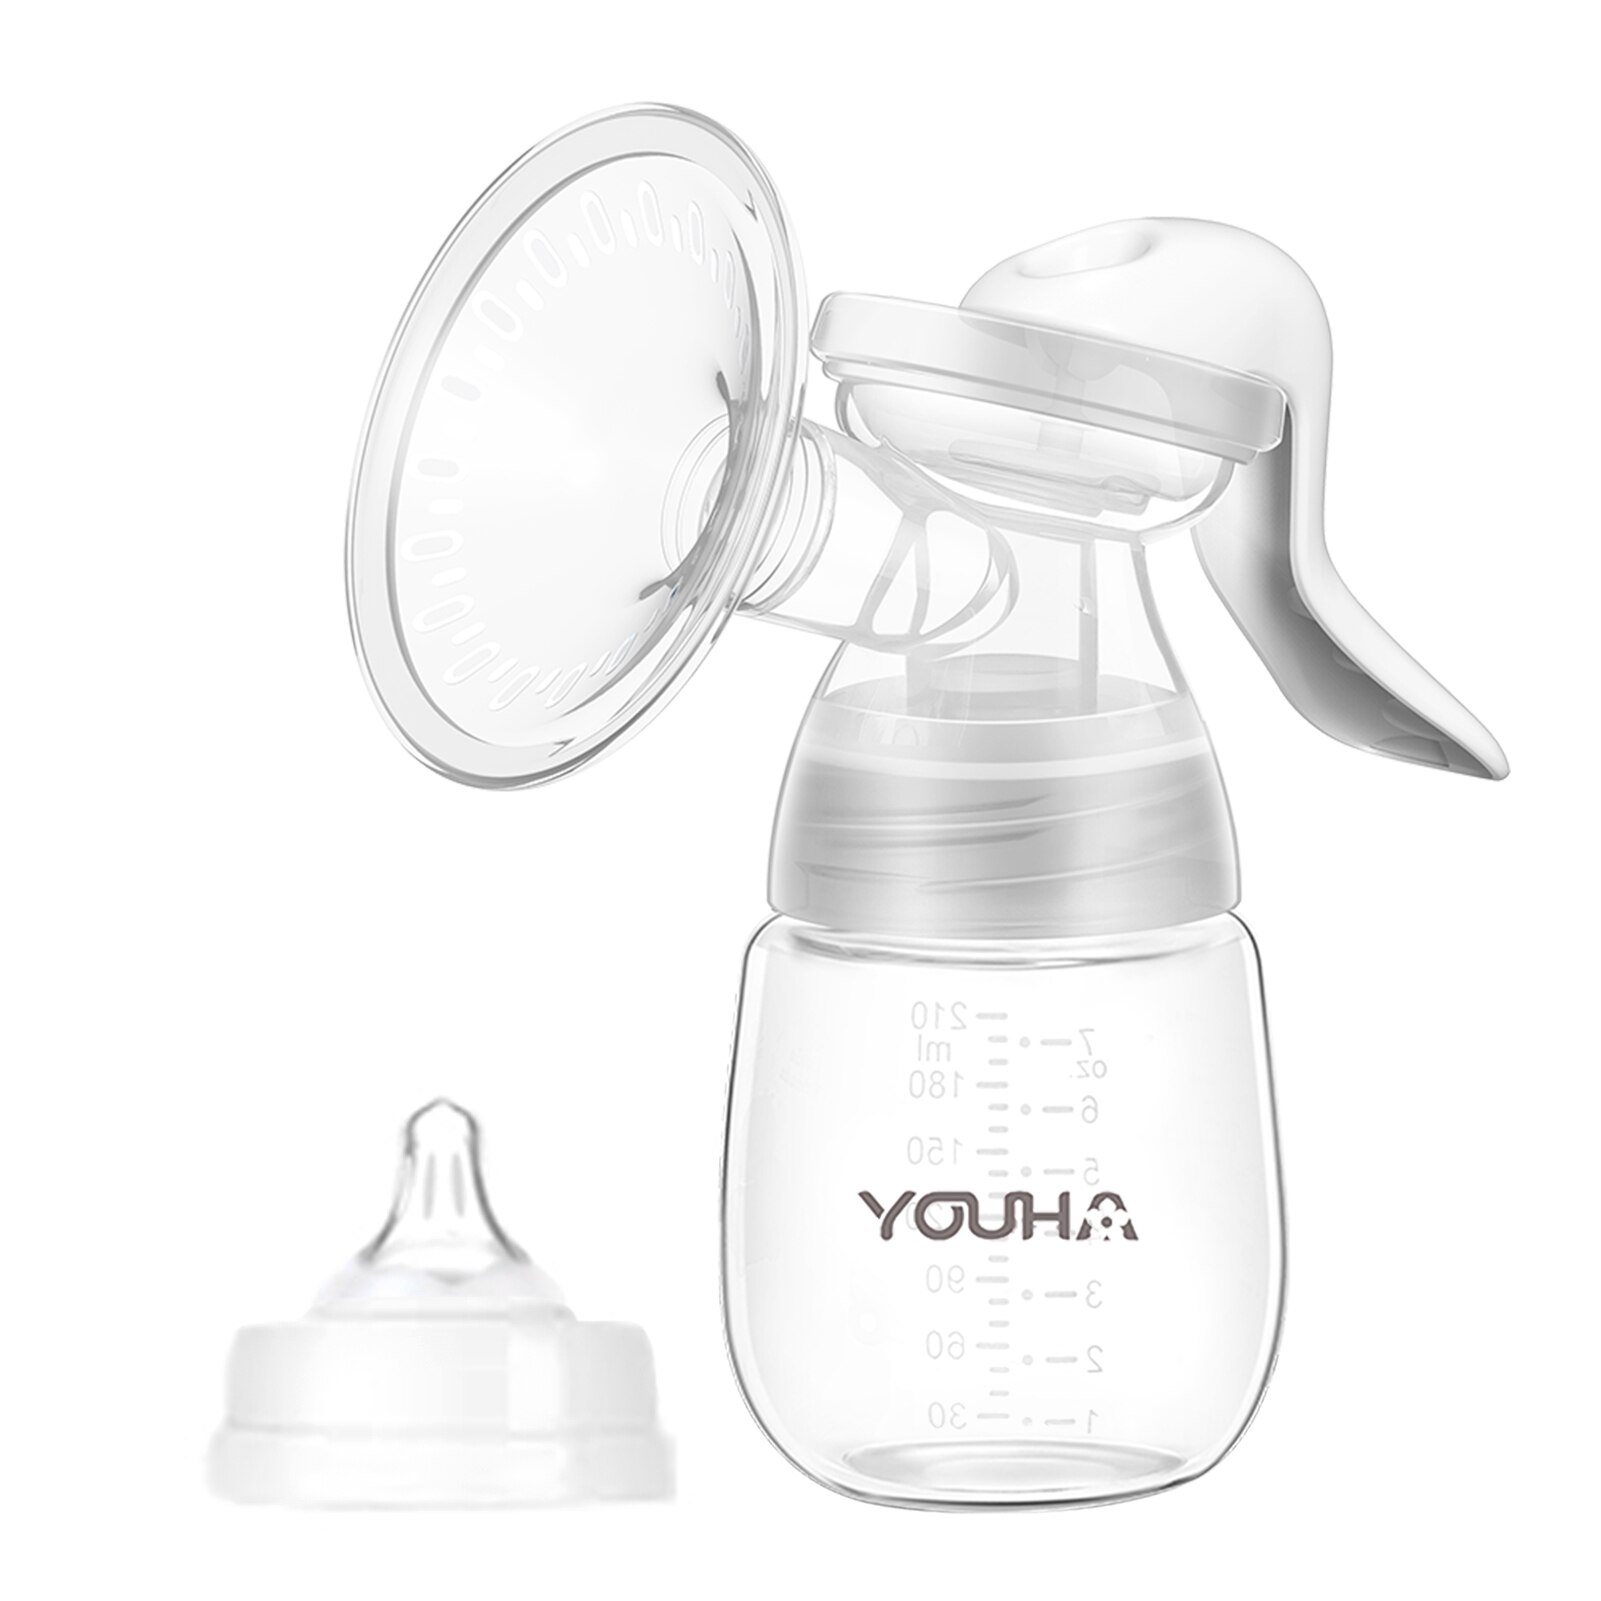 Tiralatte manuale YOUHA materiale sicuro senza BPA pompaggio di latte leggero conservazione Set di alimentazione Comfort allattamento al seno per mamme veloce